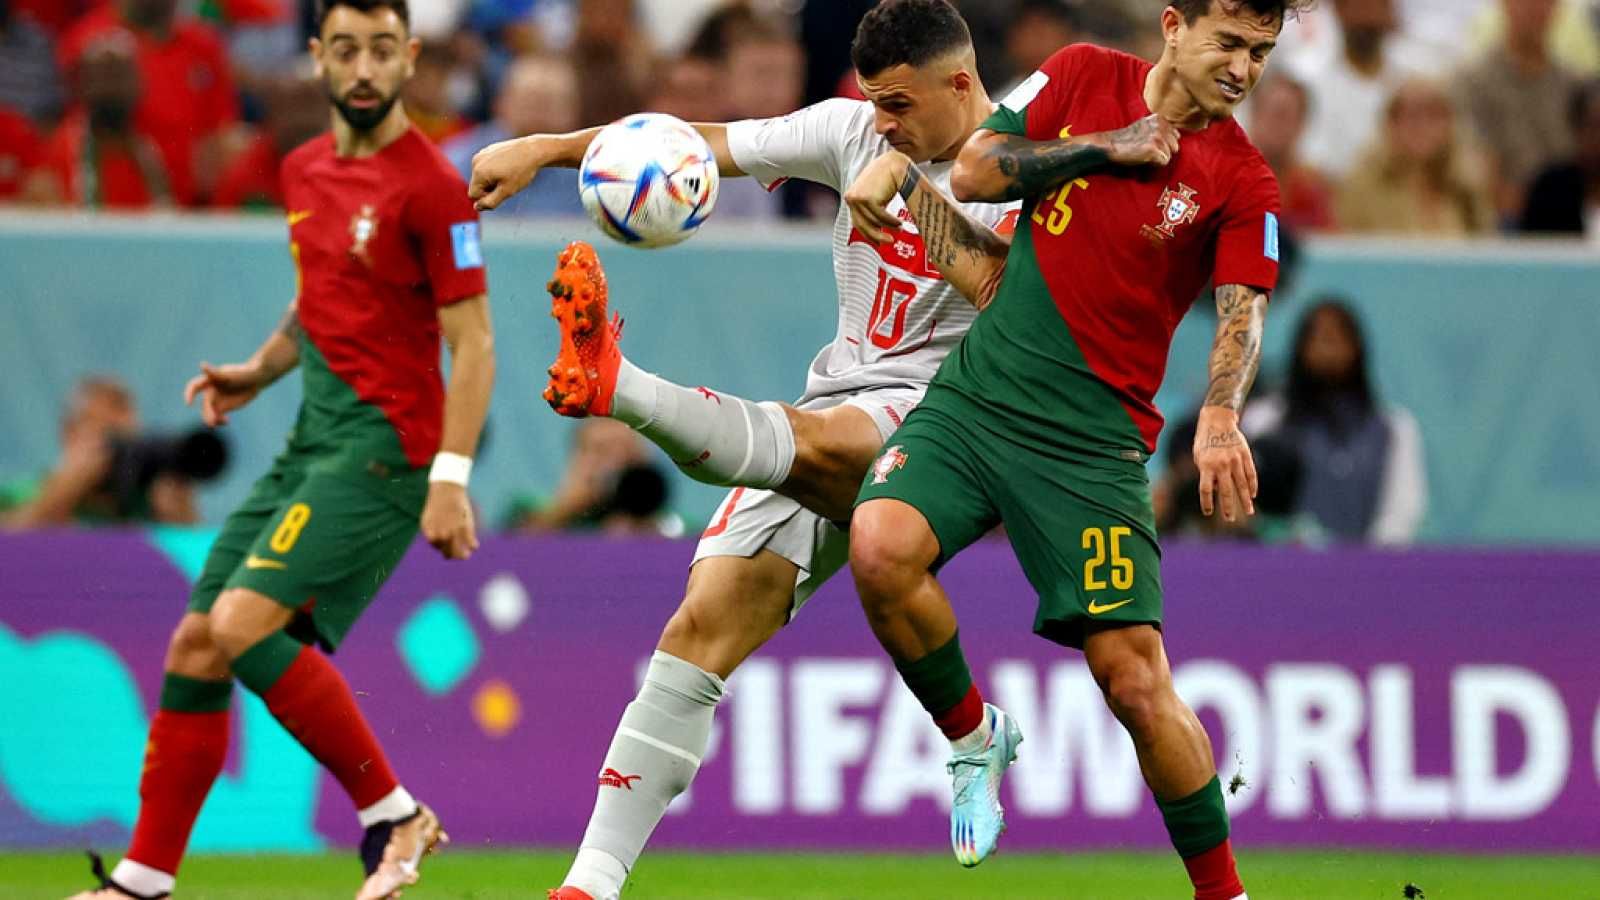 La selección de Portugal tras derrotar, 6:1 a Suiza, consiguió el ultimo cupo a cuartos de final en Qatar 2022